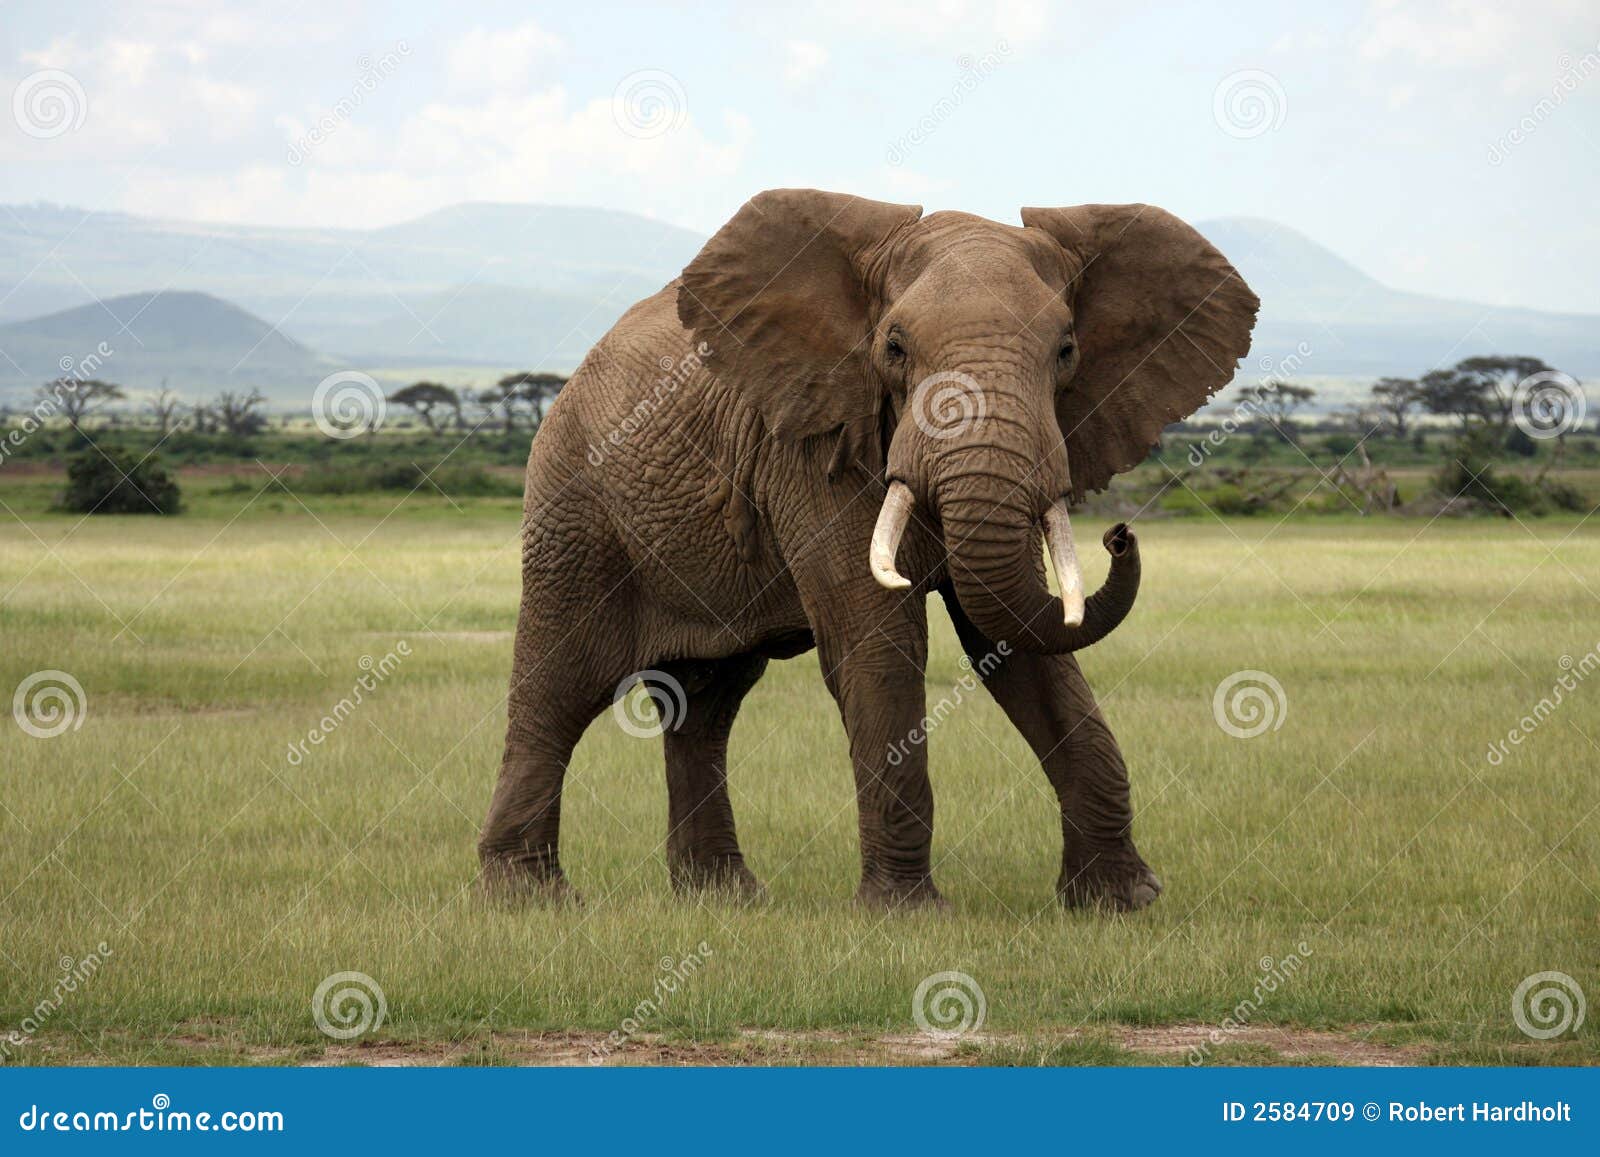 african elephant amboseli